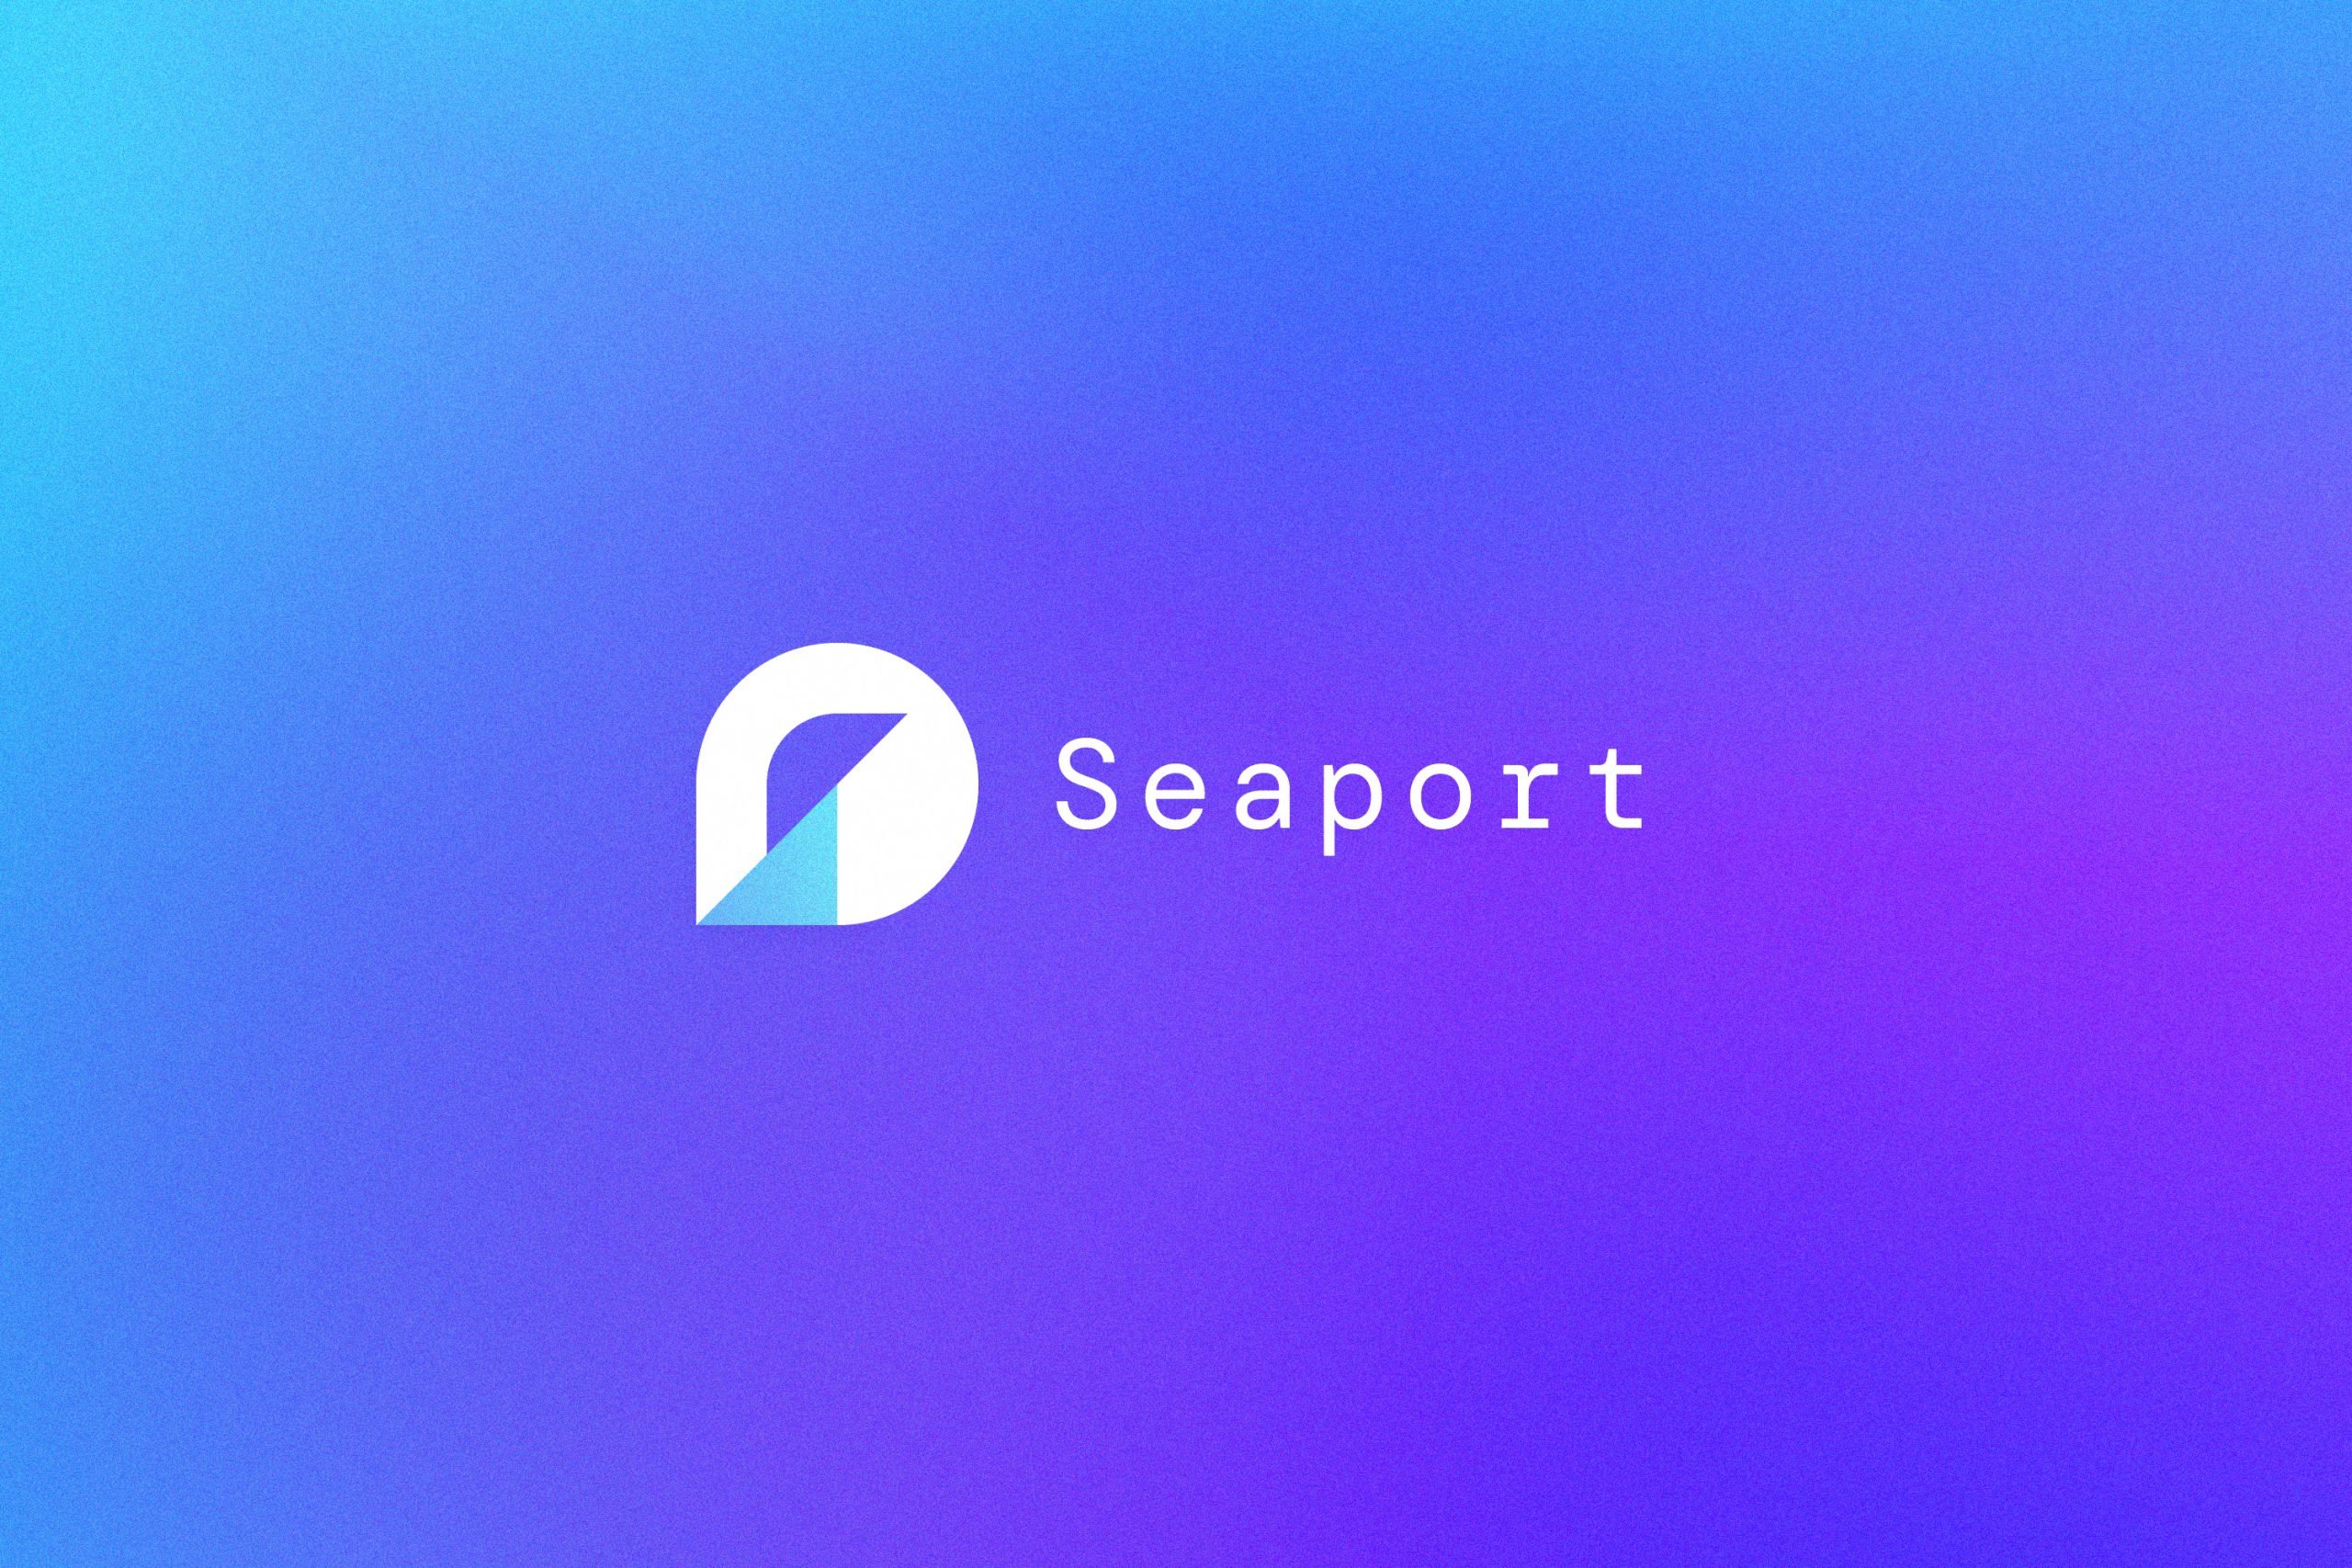 The logo for OpenSea's Seaport Protocol